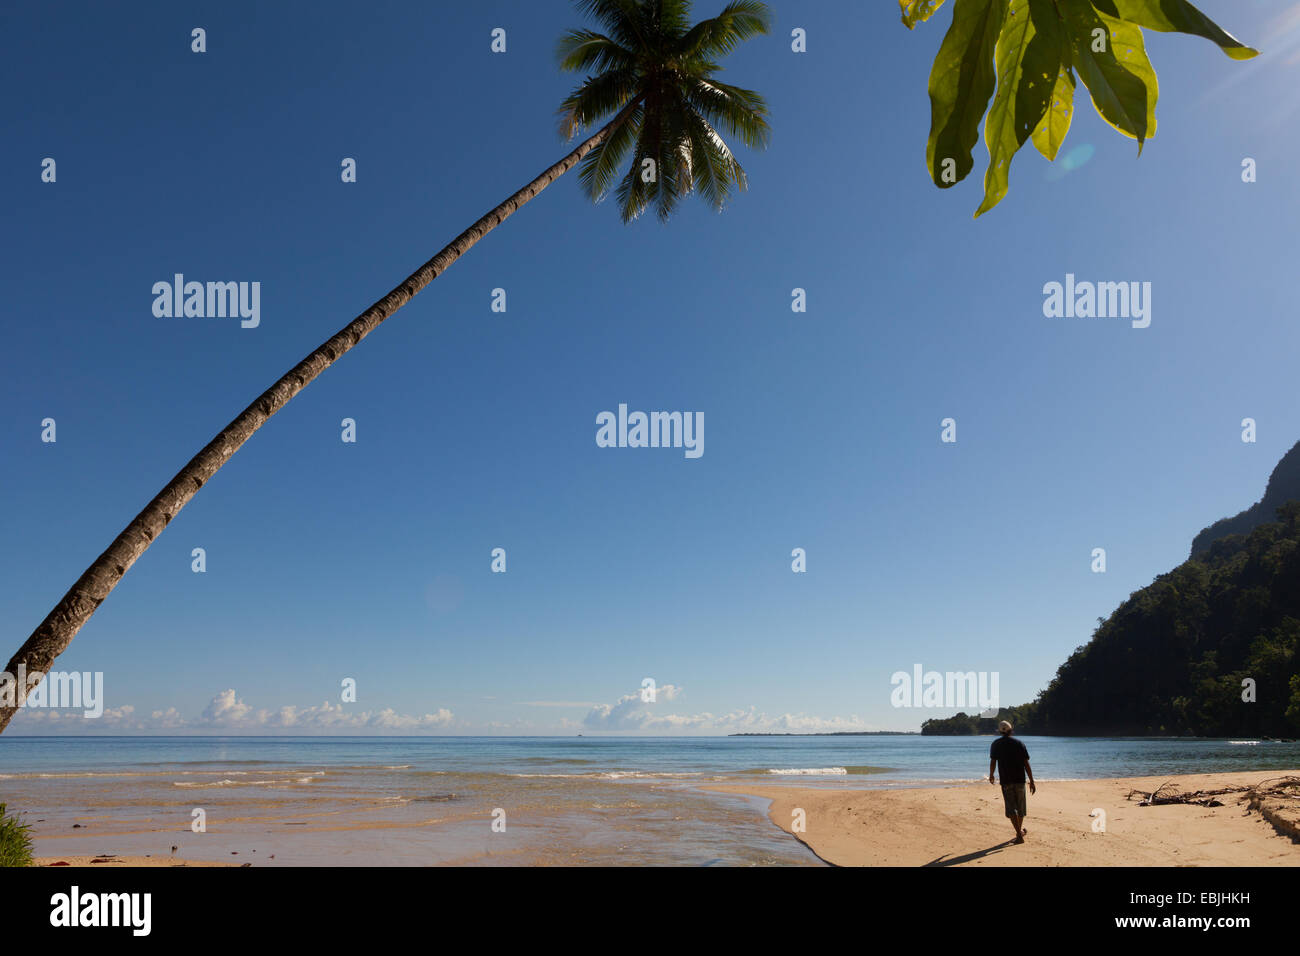 Ein Mann, der auf einem Sandstrand spaziert ist, der mit einem Kokosnussbaum verziert ist, neben der Mündung eines Bachs in Saleman, North Seram, Central Maluku, Maluku, Indonesien. Stockfoto